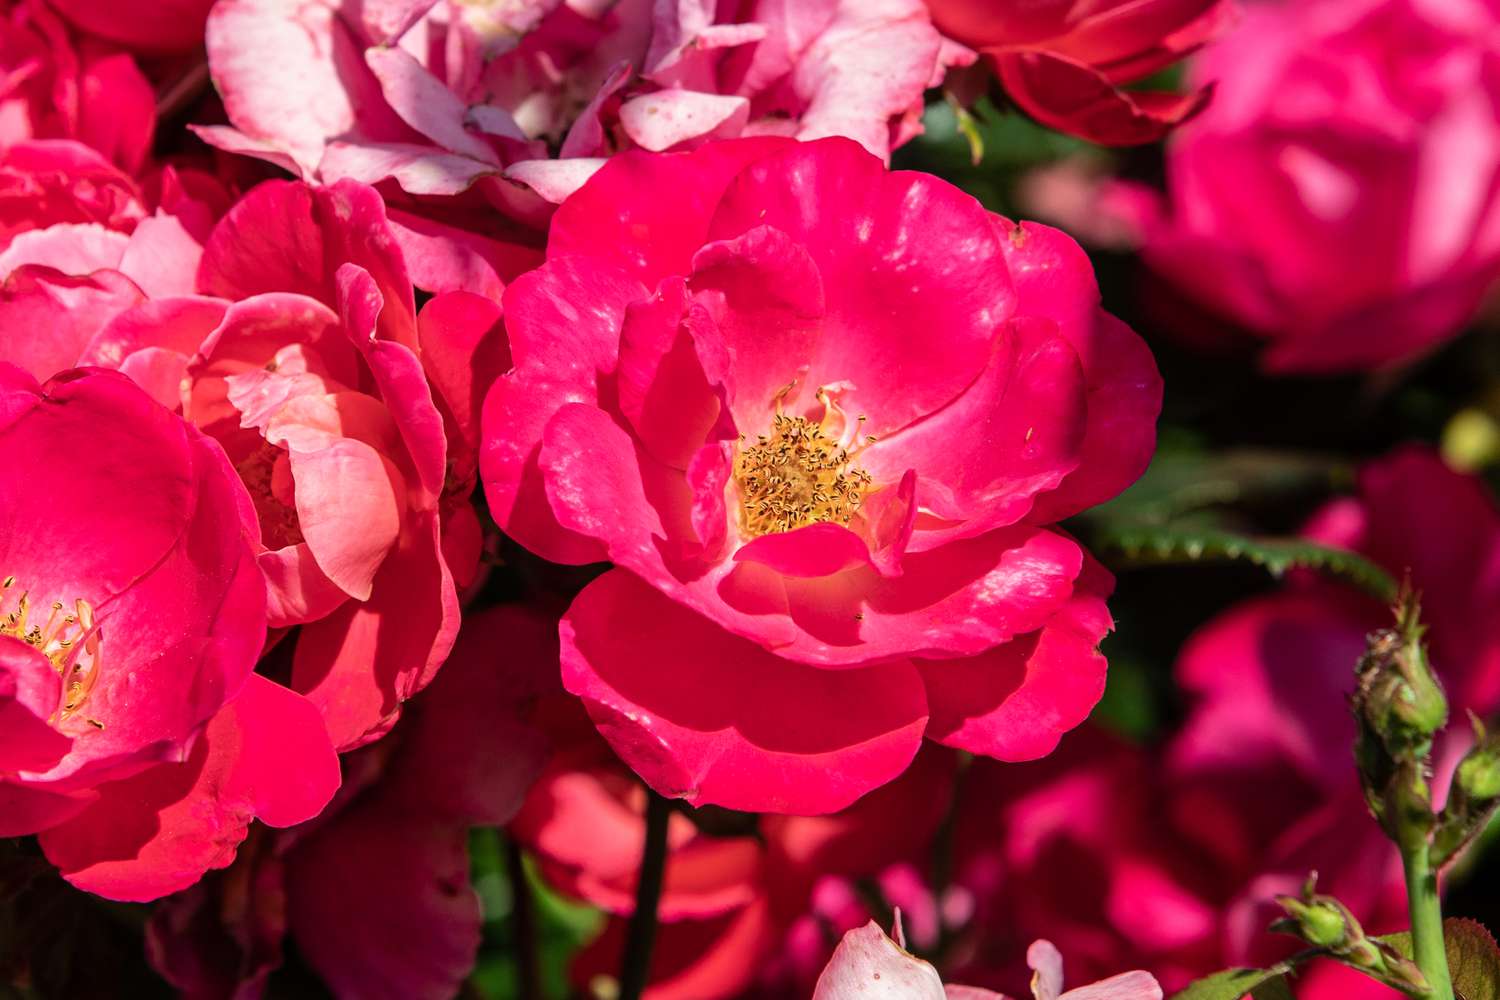 Leuchtend rosa Rose mit gelber Mitte im Sonnenlicht in Nahaufnahme